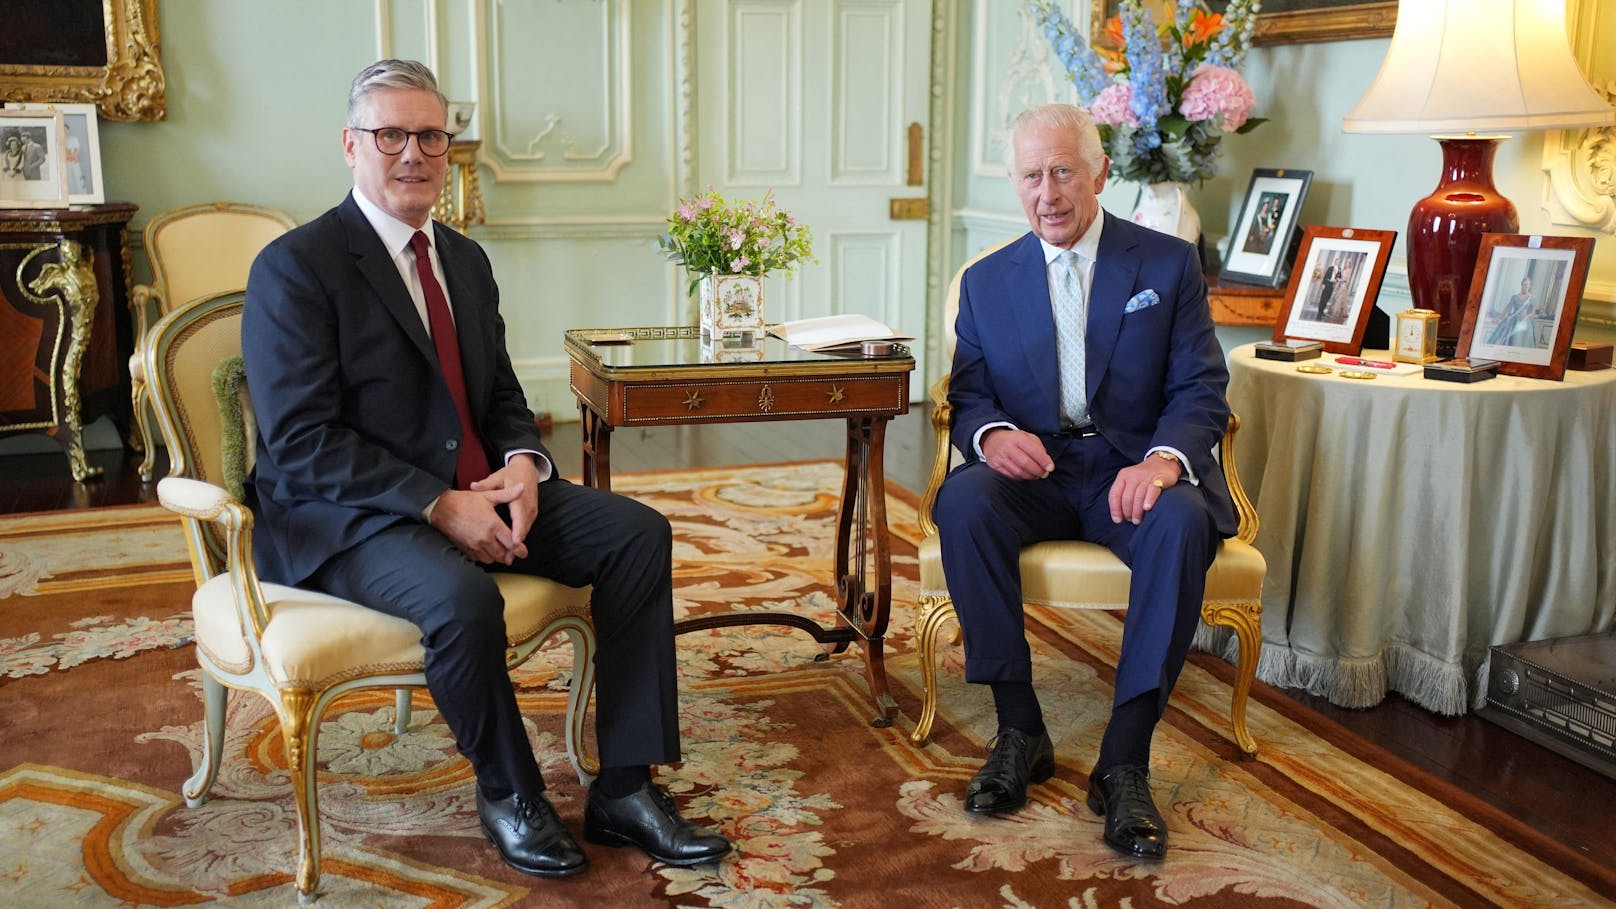 König Charles ernennt Starmer zum neuen Premierminister